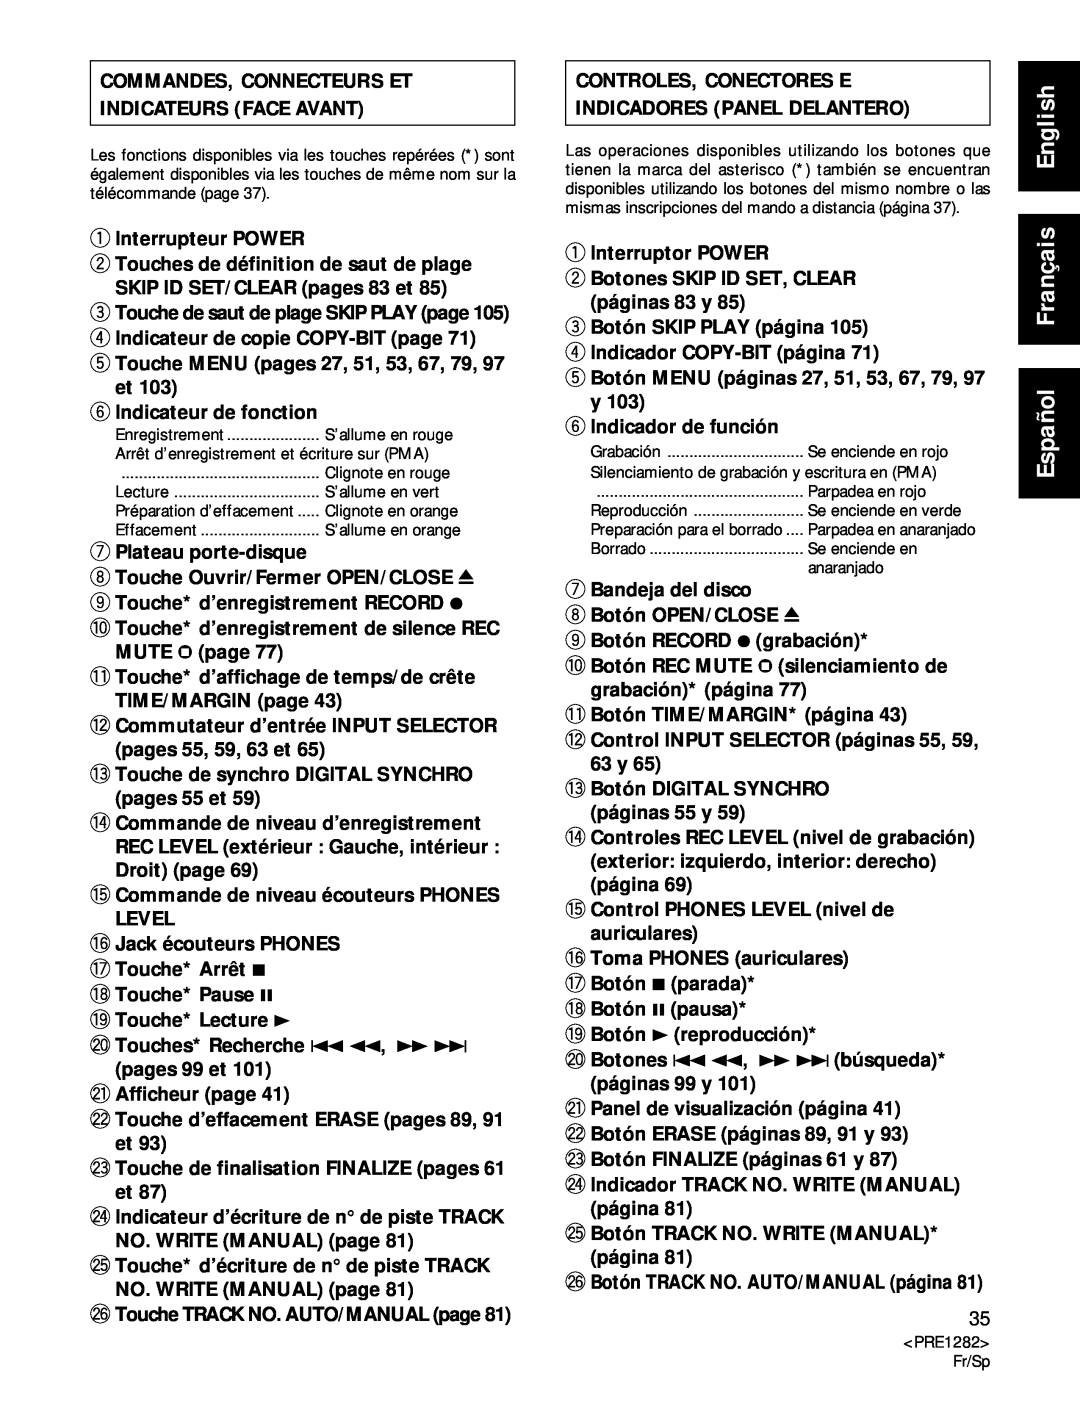 Americana Appliances CDR-850 manual Commandes, Connecteurs Et Indicateurs Face Avant, Español Français English 